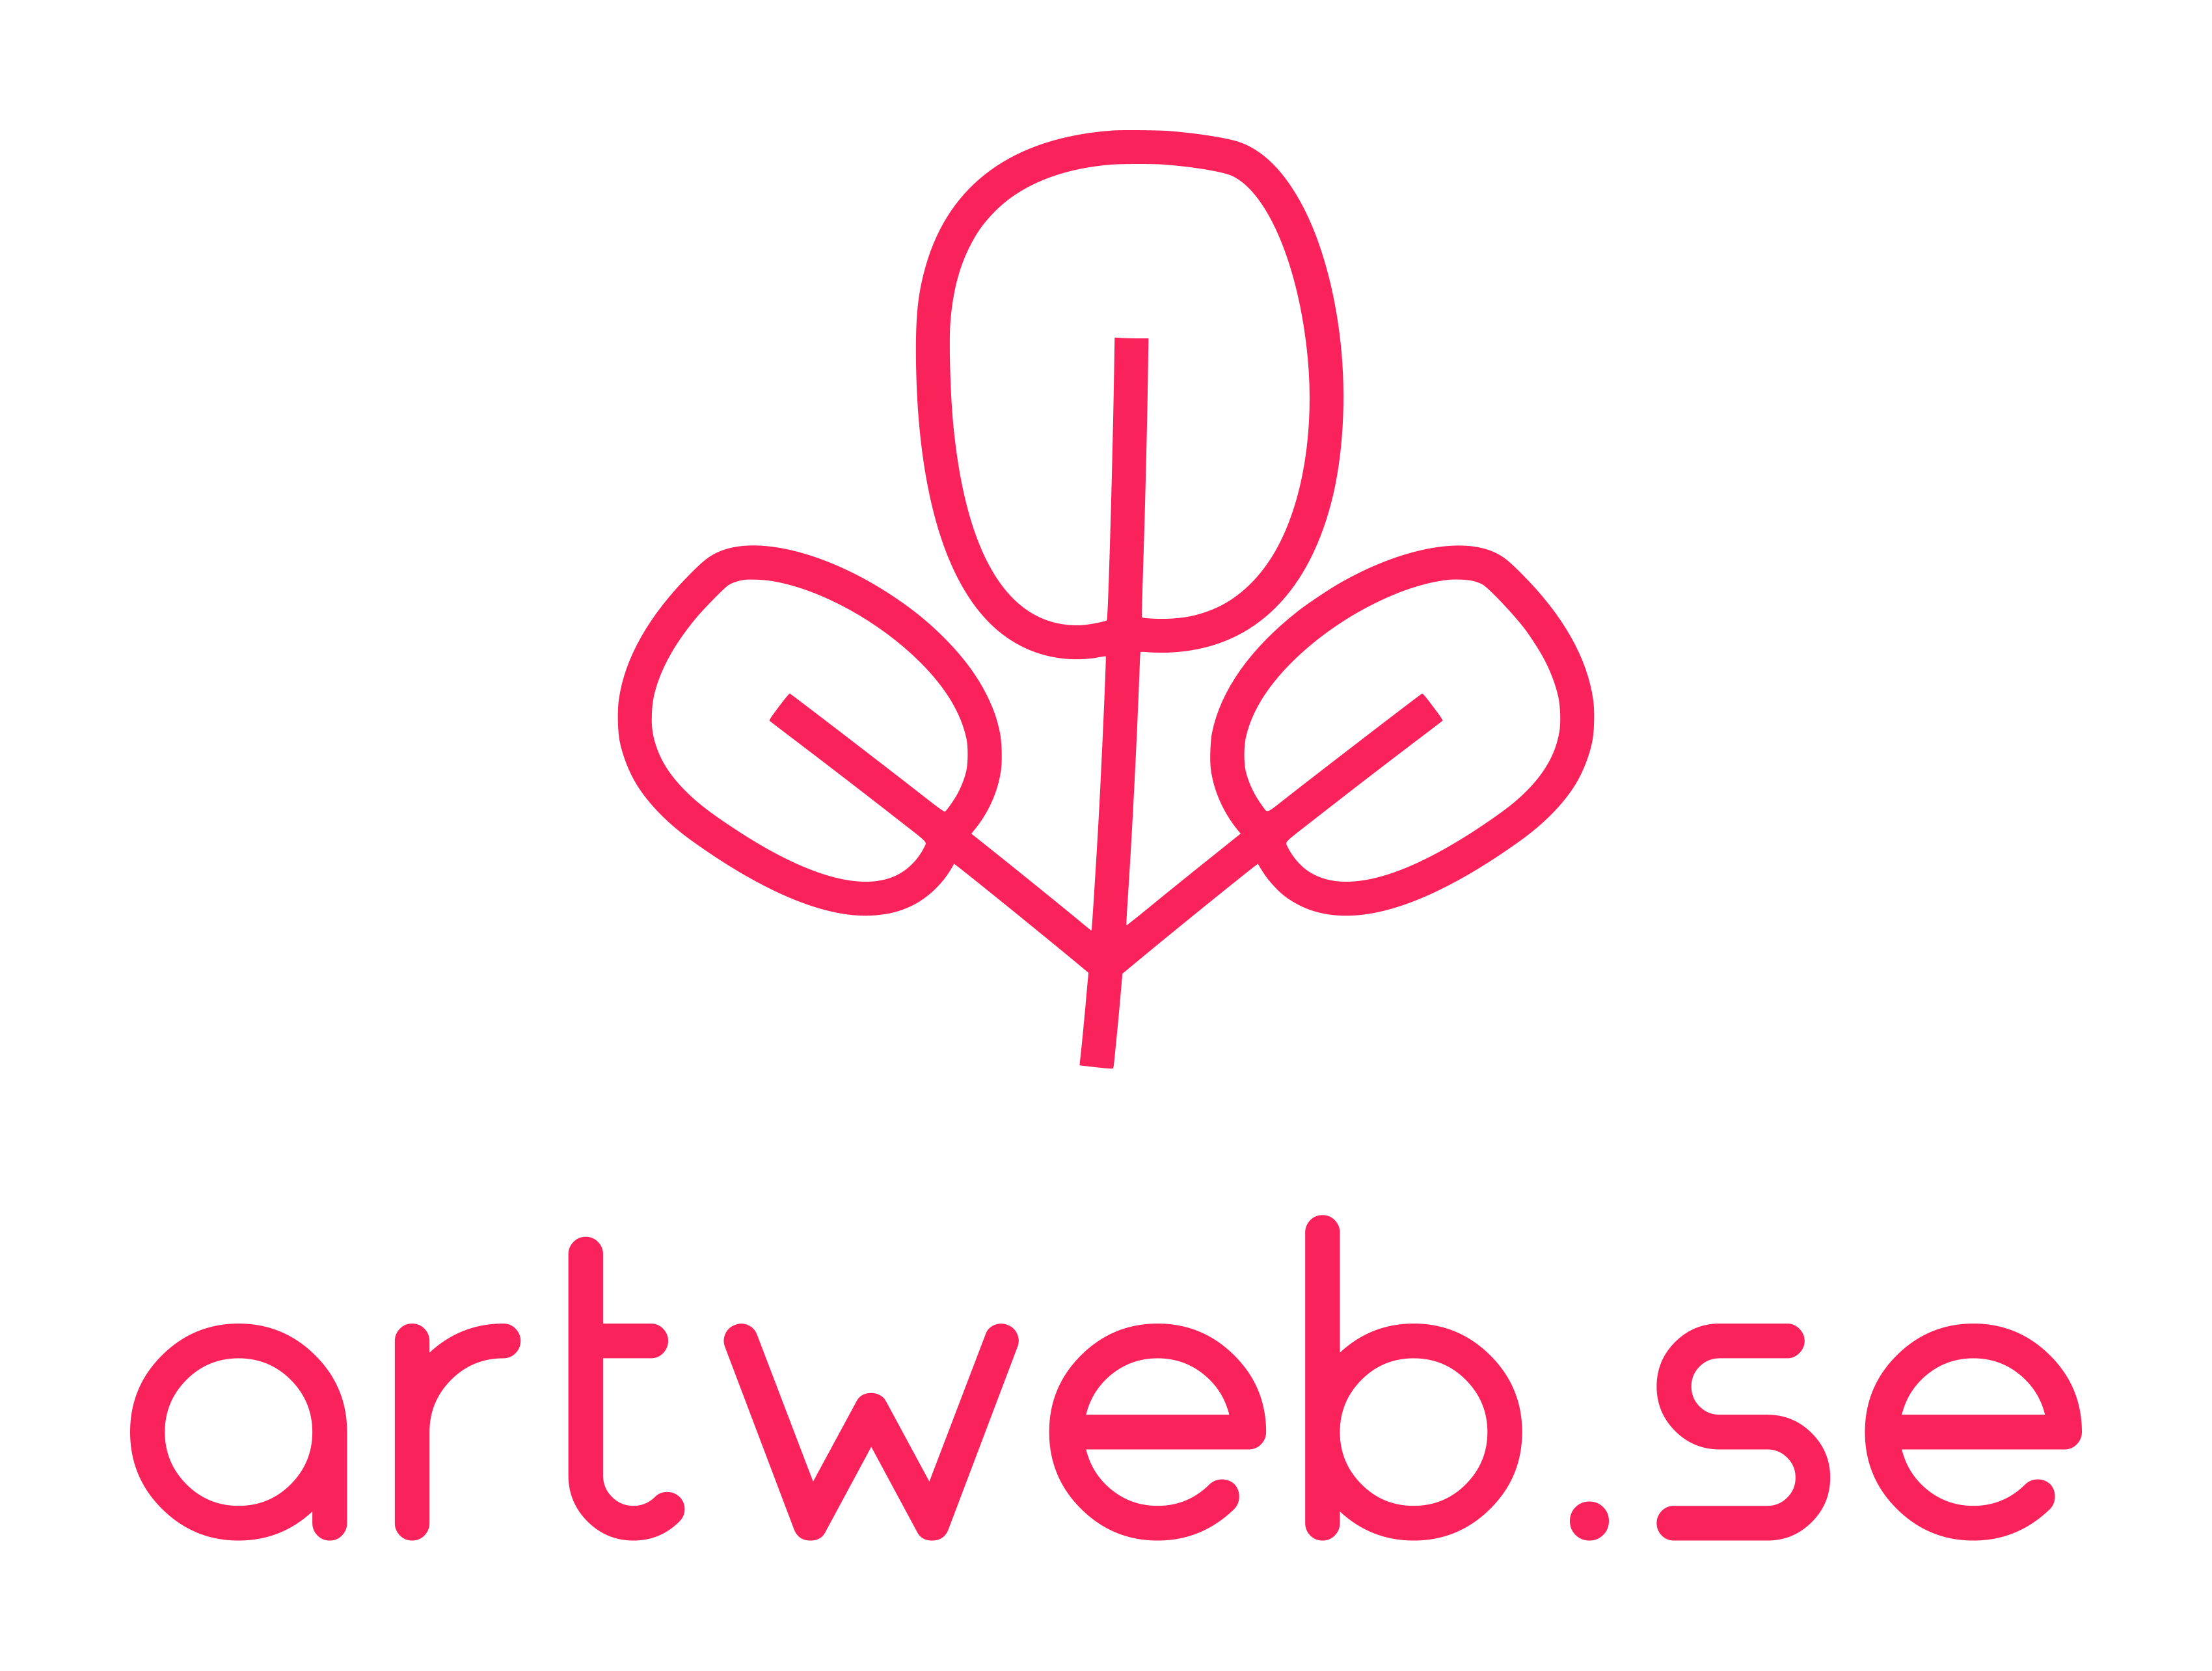 artweb.se